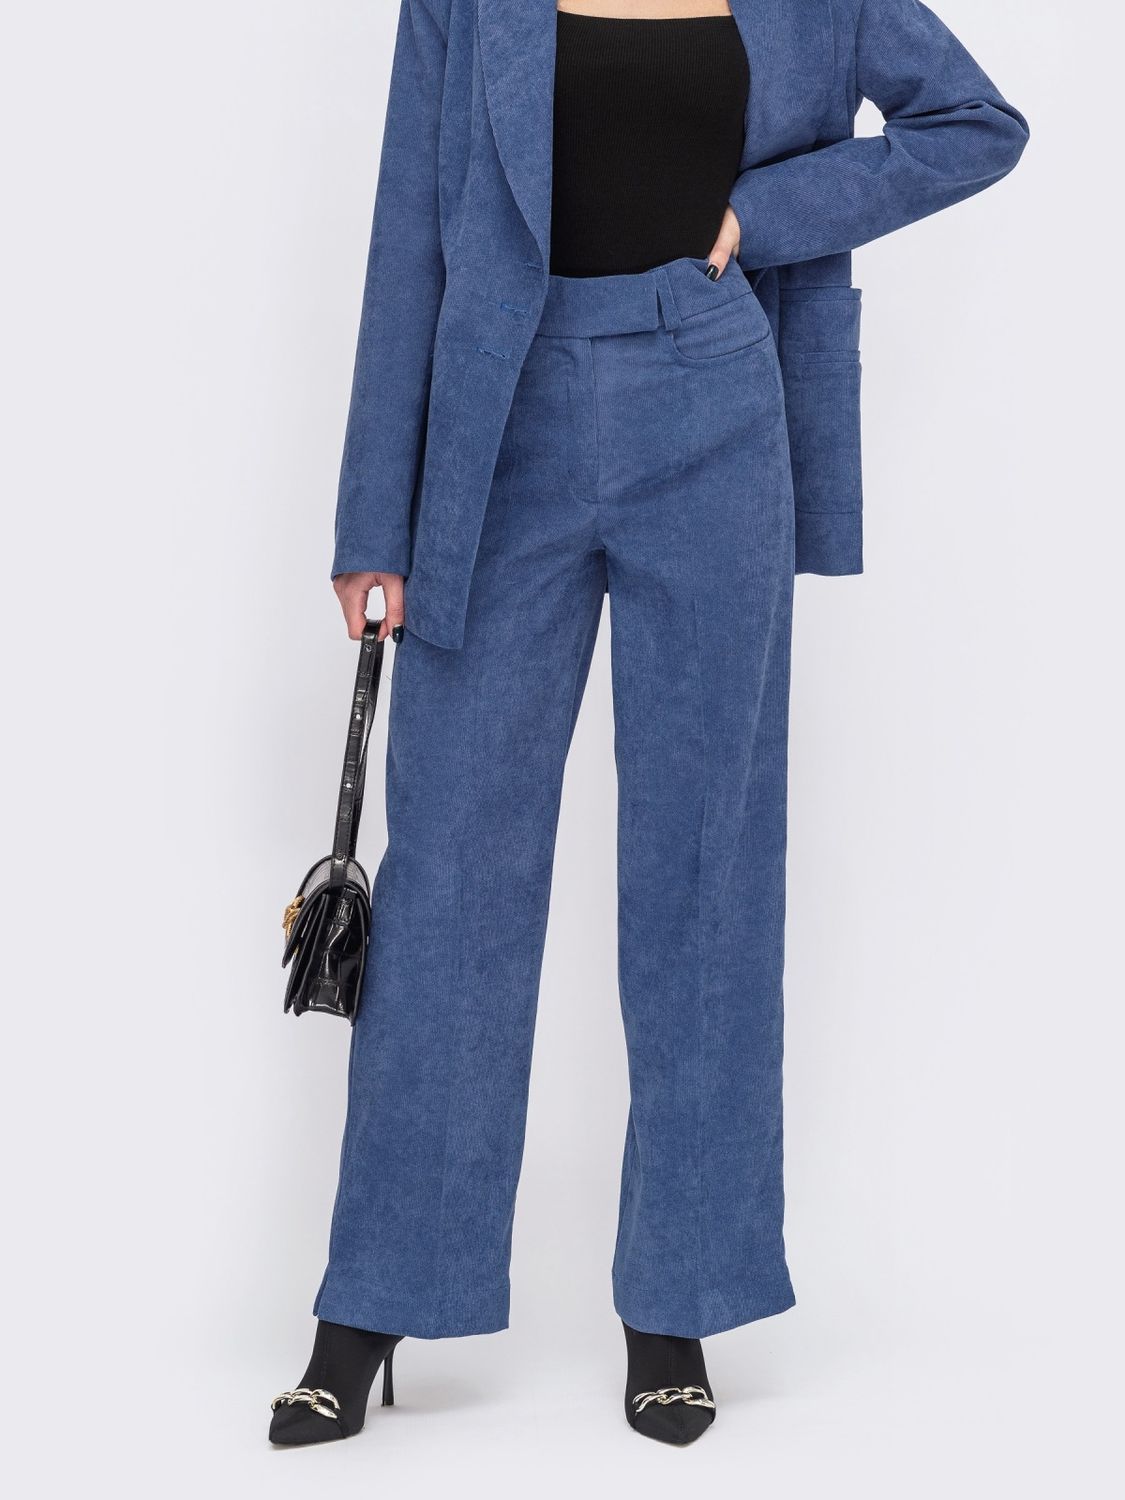 Вельветовые брюки прямого кроя со стрелками синие - фото